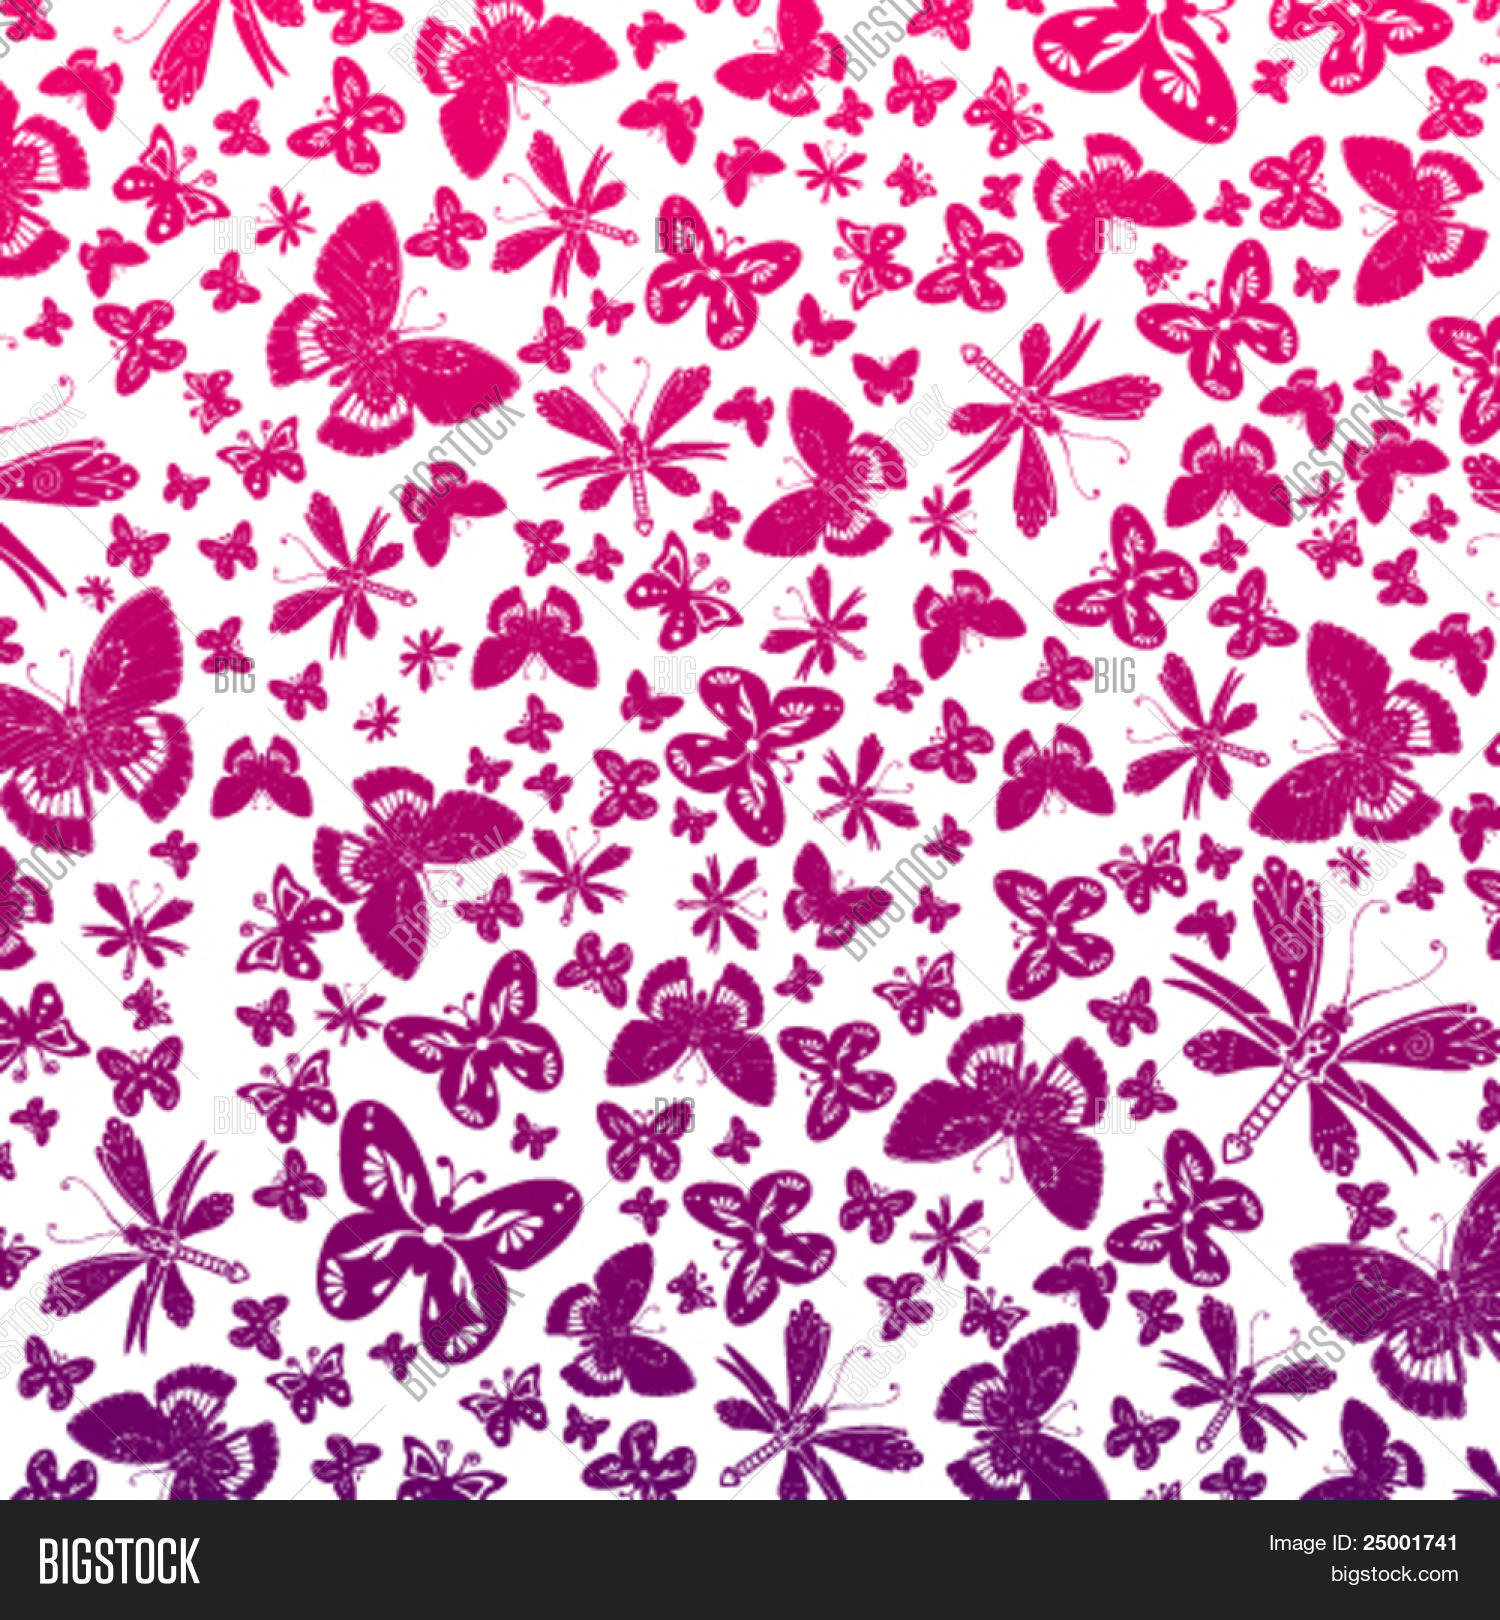 Mariposas Wallpaper - Butterflies , HD Wallpaper & Backgrounds